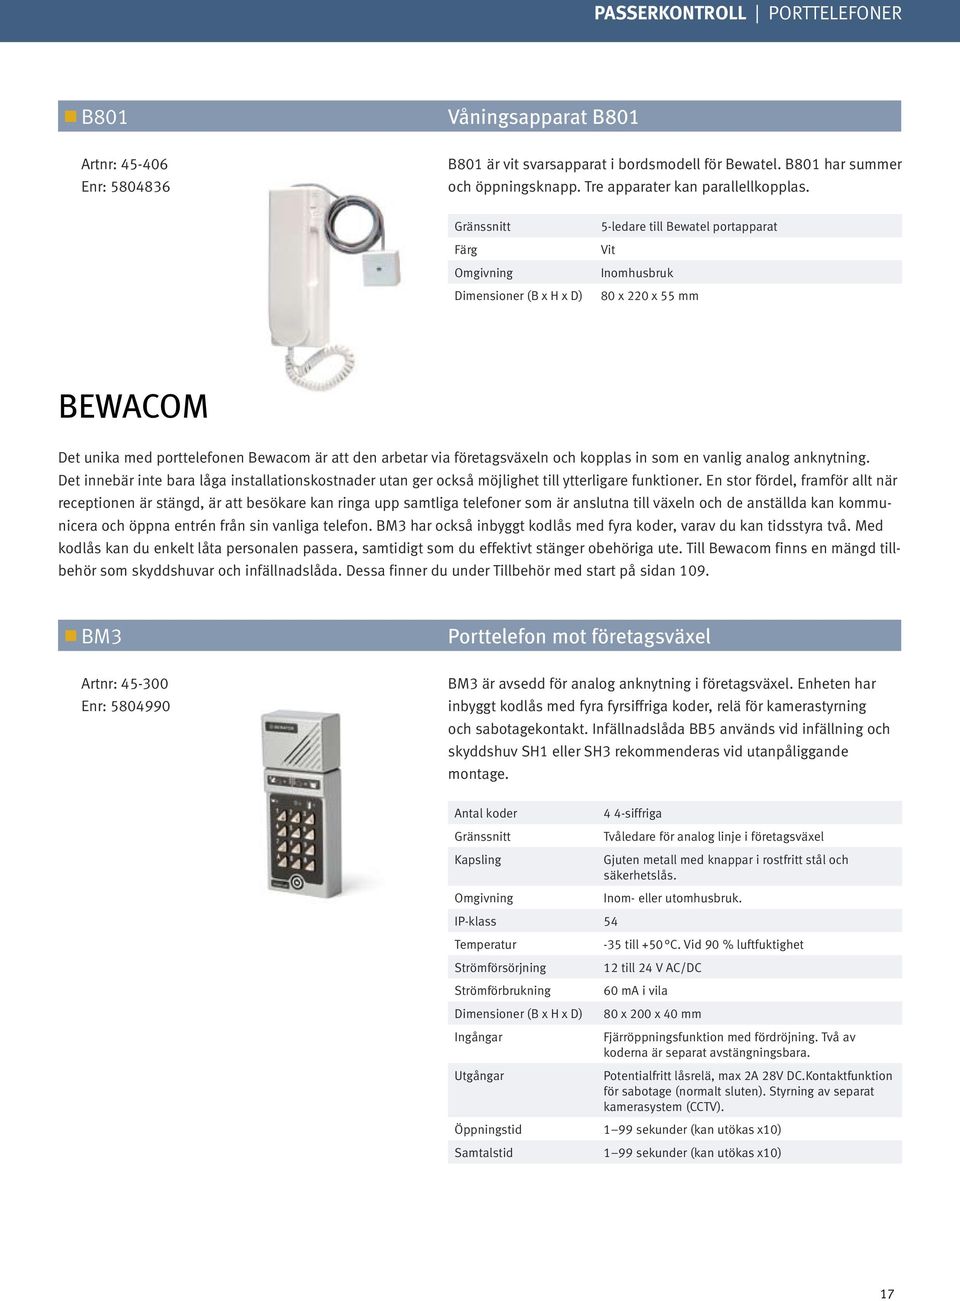 Gränssnitt Omgivning 5-ledare till Bewatel portapparat Vit Inomhusbruk 80 x 220 x 55 mm BEWACOM Det unika med porttelefonen Bewacom är att den arbetar via företagsväxeln och kopplas in som en vanlig